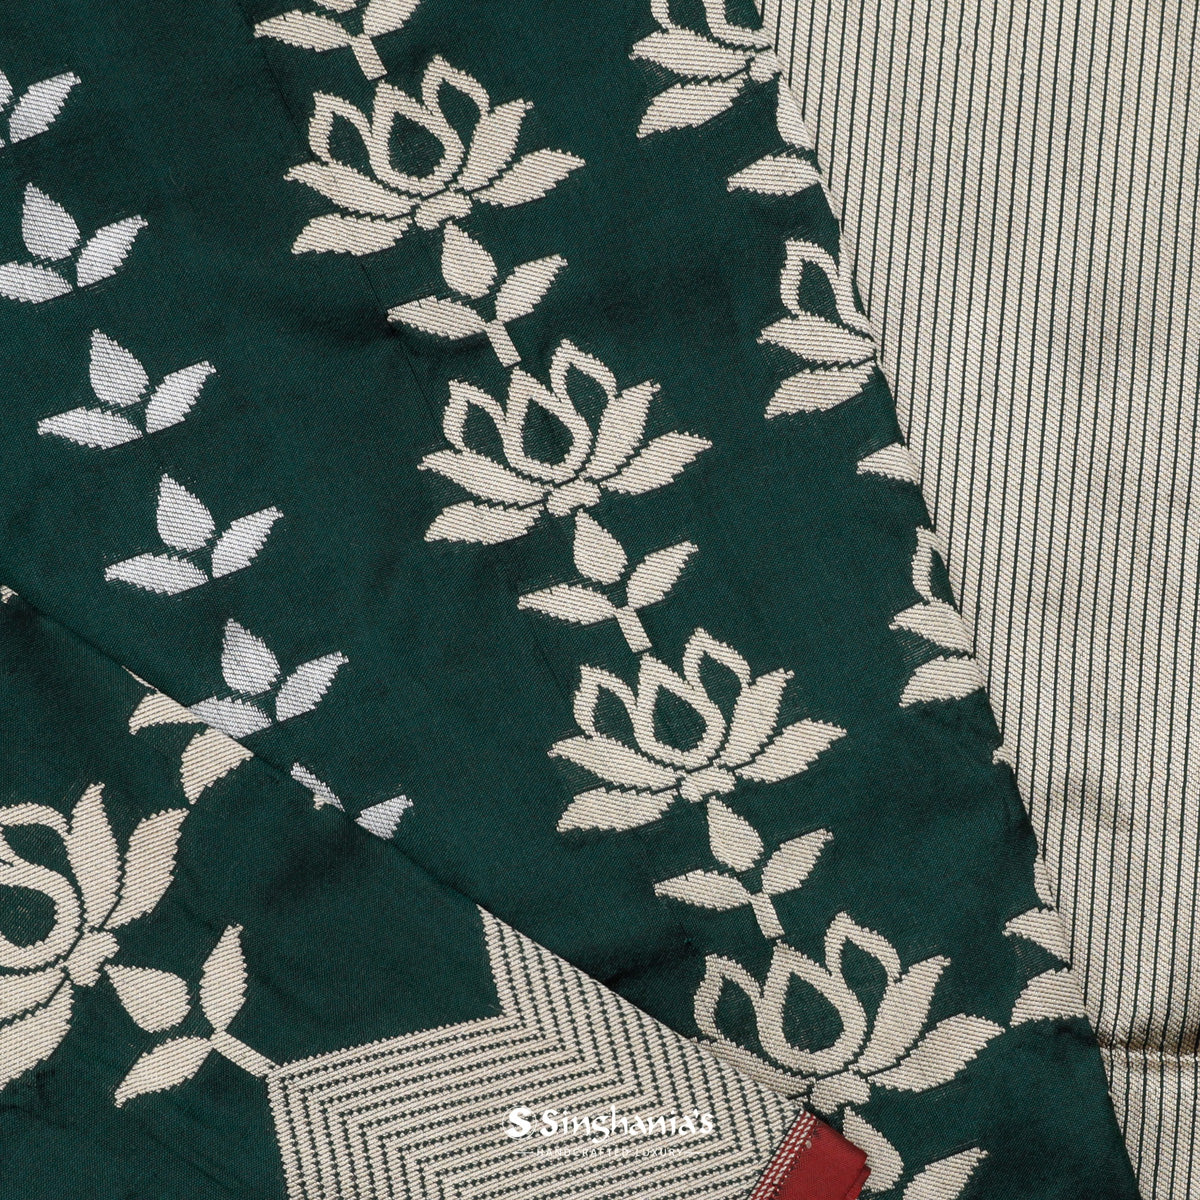 Medium Jungle Green Banarasi Silk Saree With Floral Buttas Weaving